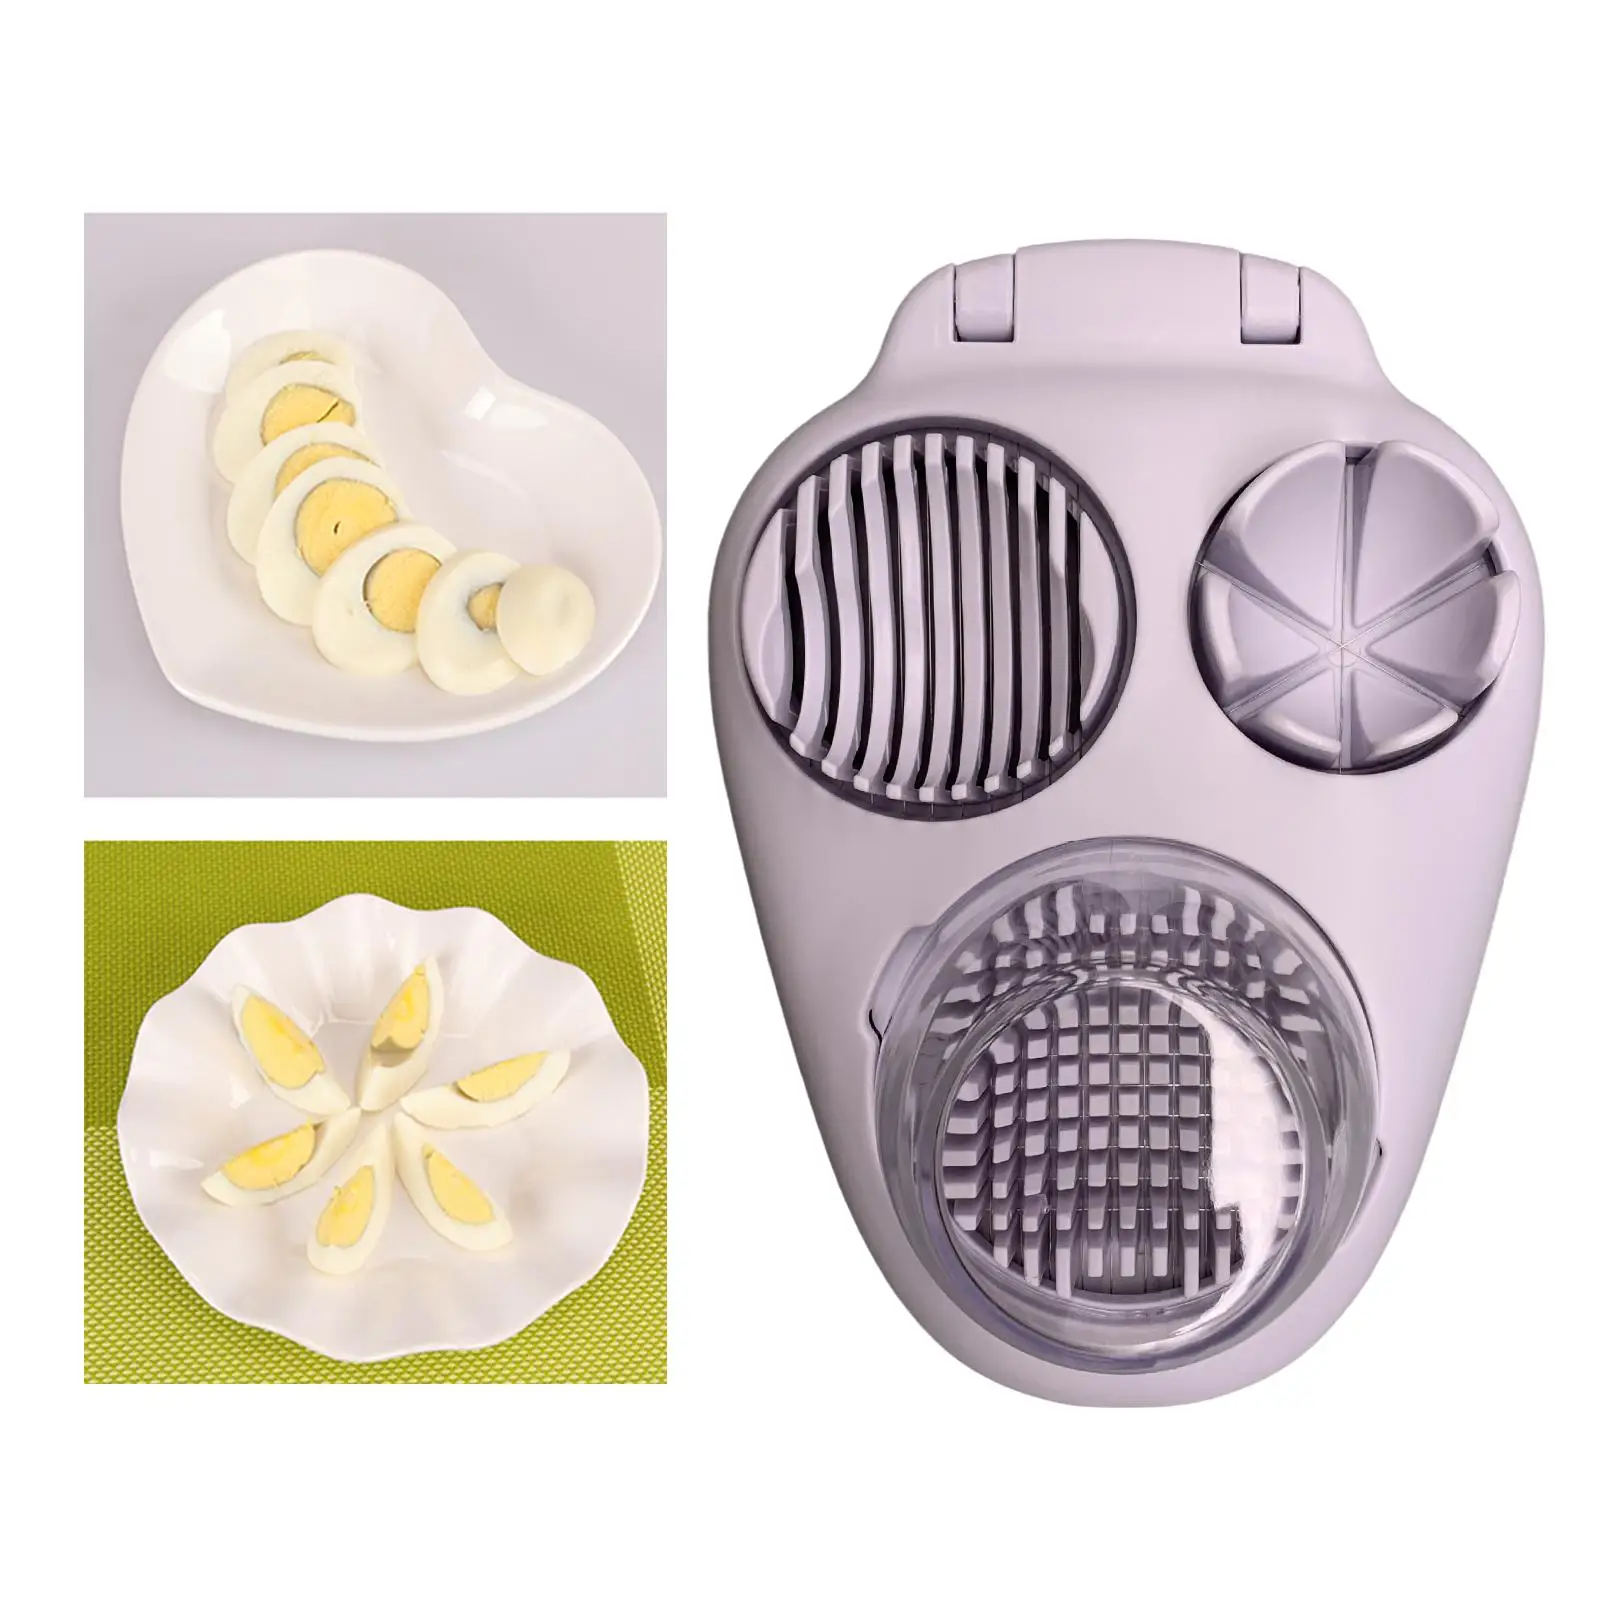 Multi Egg Slicer Easy to Clean Kitchen Gadget Fruit Vegetable Slicer Tool Egg Cutter for Lime Mushroom Strawberry Bananas Lemon